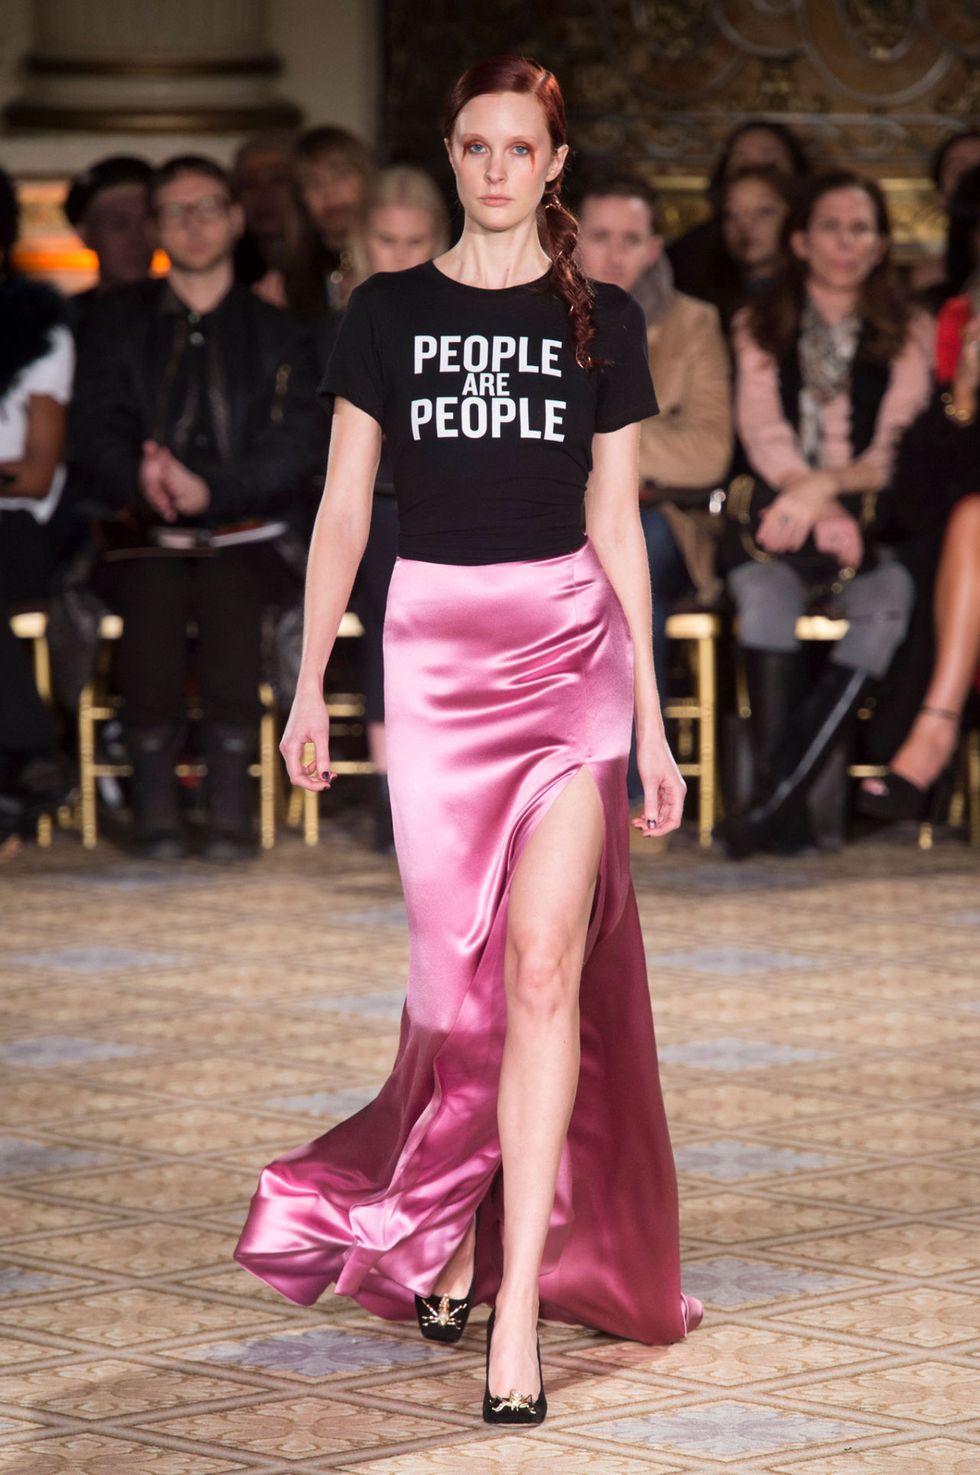 Maria Grazia Chiuri da Dior ha dato il via al trend delle t-shirt personalizzate con frasi e messaggi speciali, e la New York Fashion Week segue a ruota anche per il prossimo autunno inverno 2017 2018